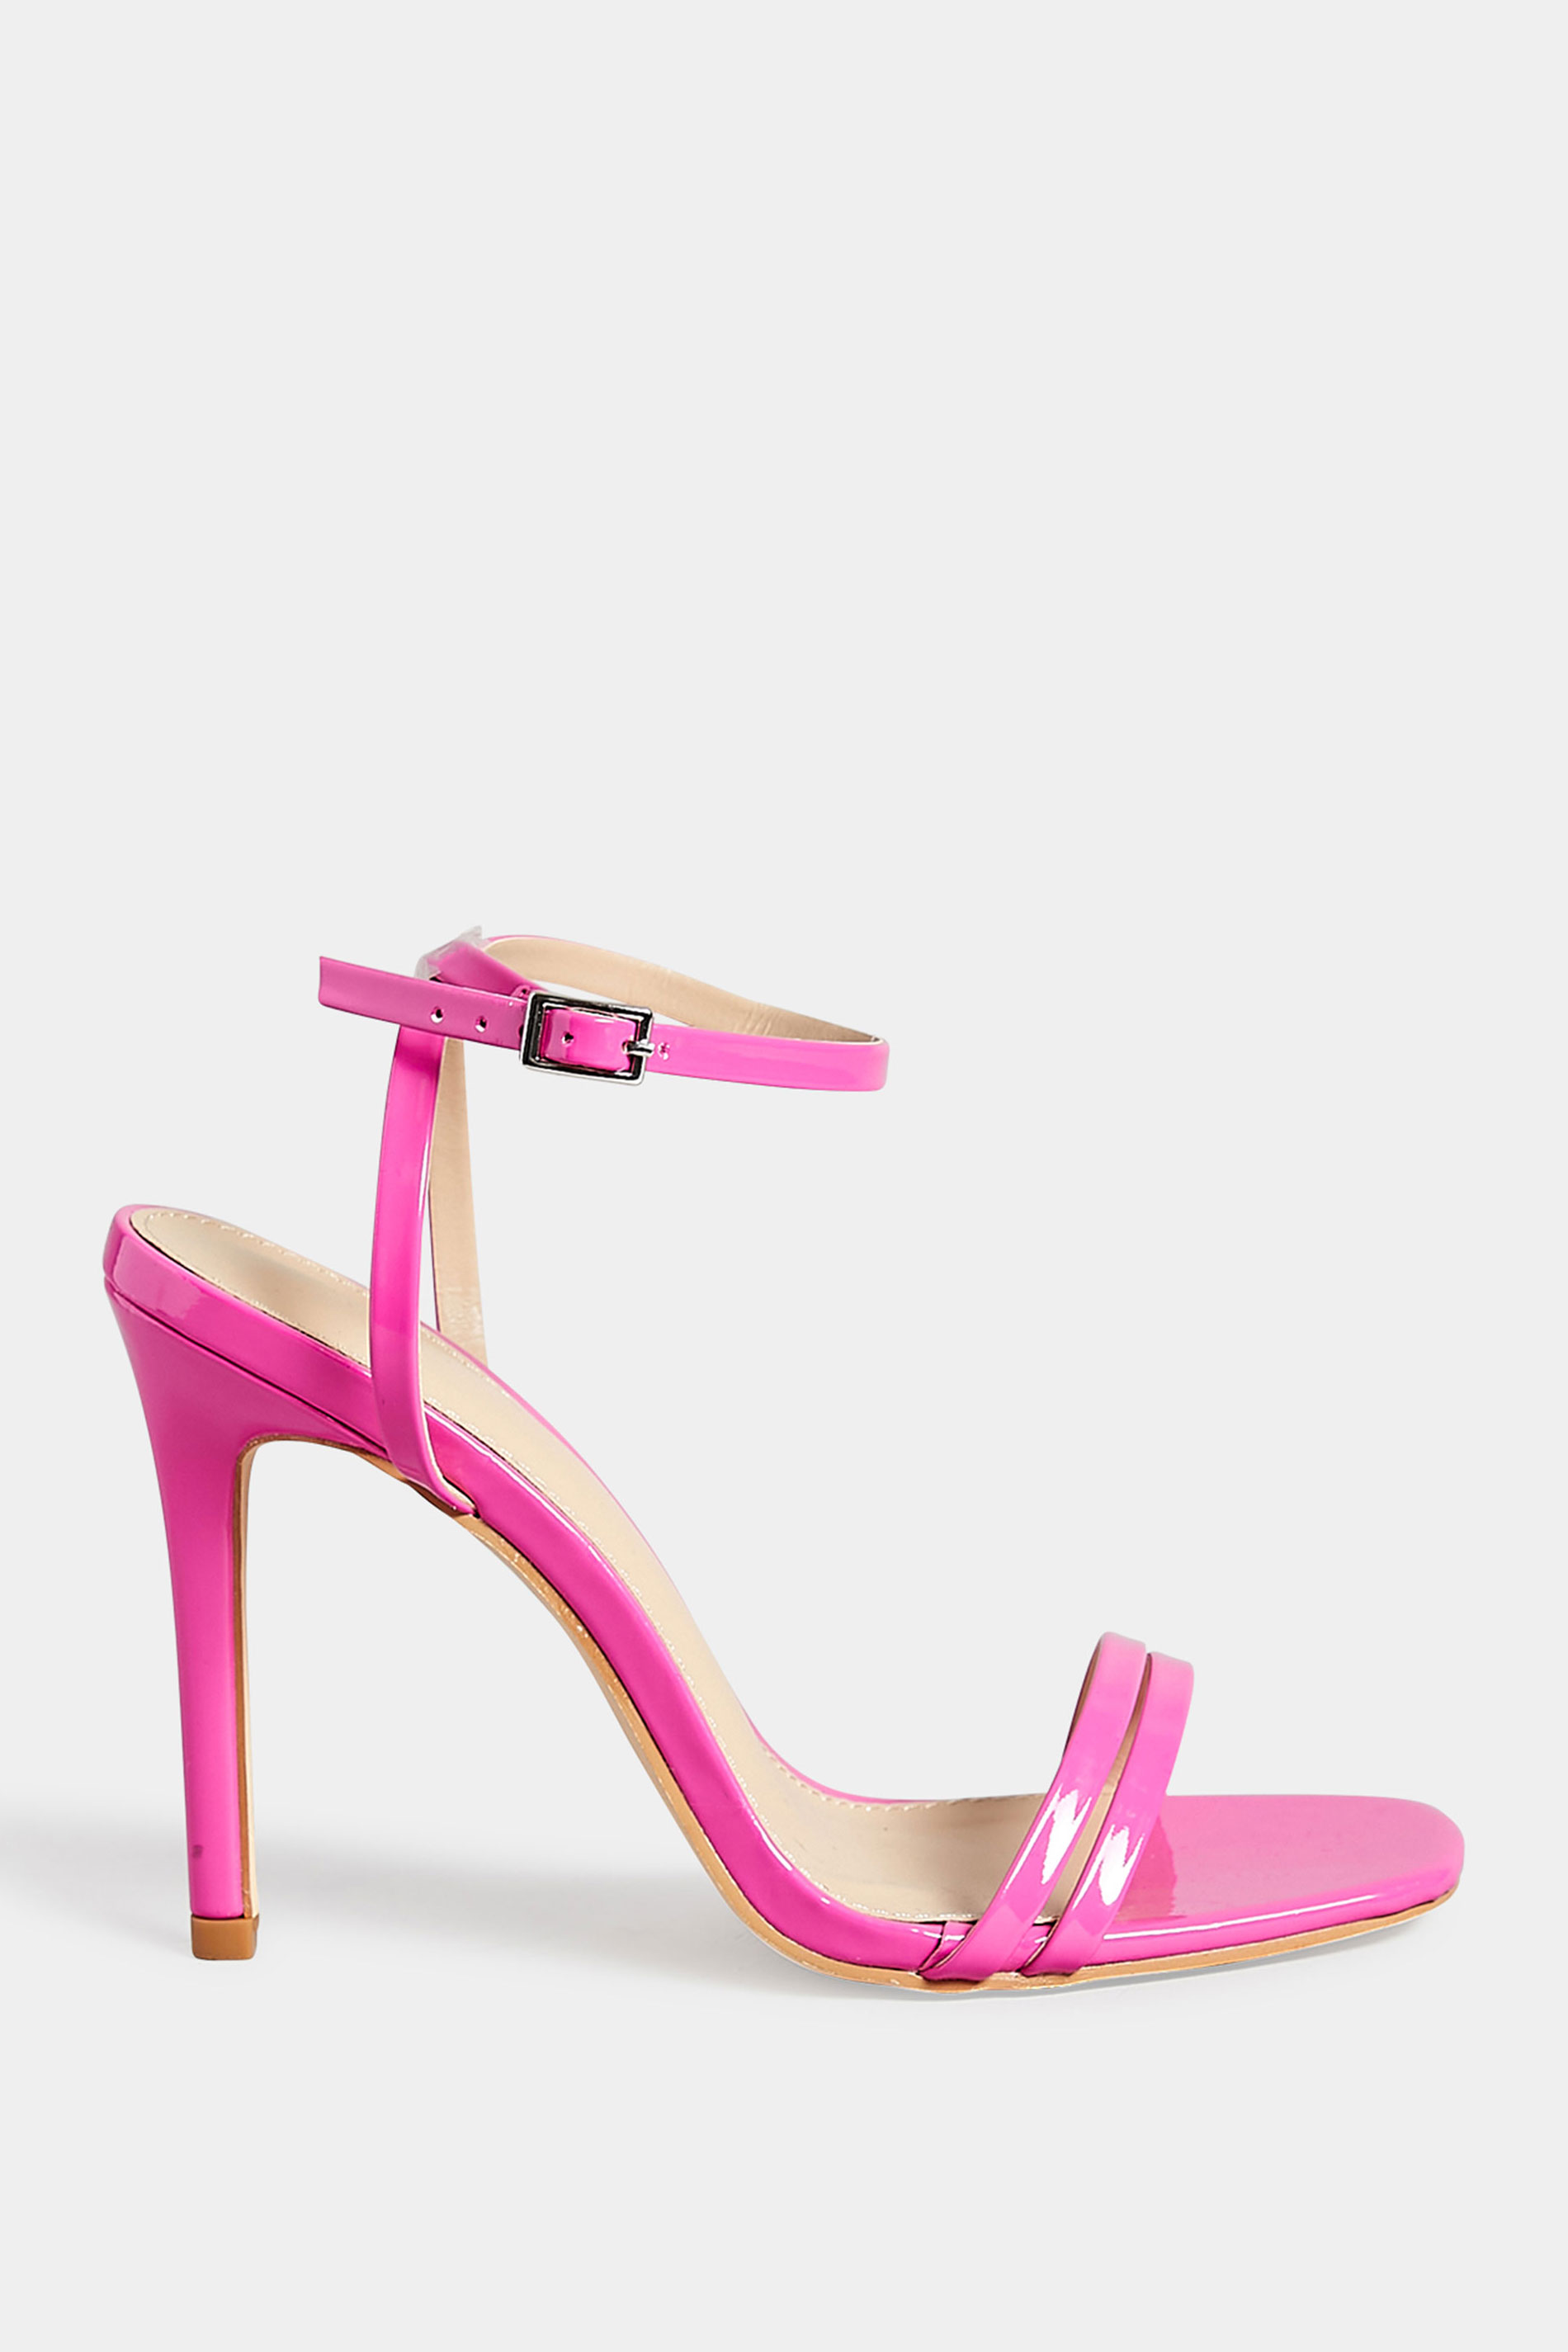 PixieGirl Pink Double Band Heels In Standard Fit | PixieGirl 3